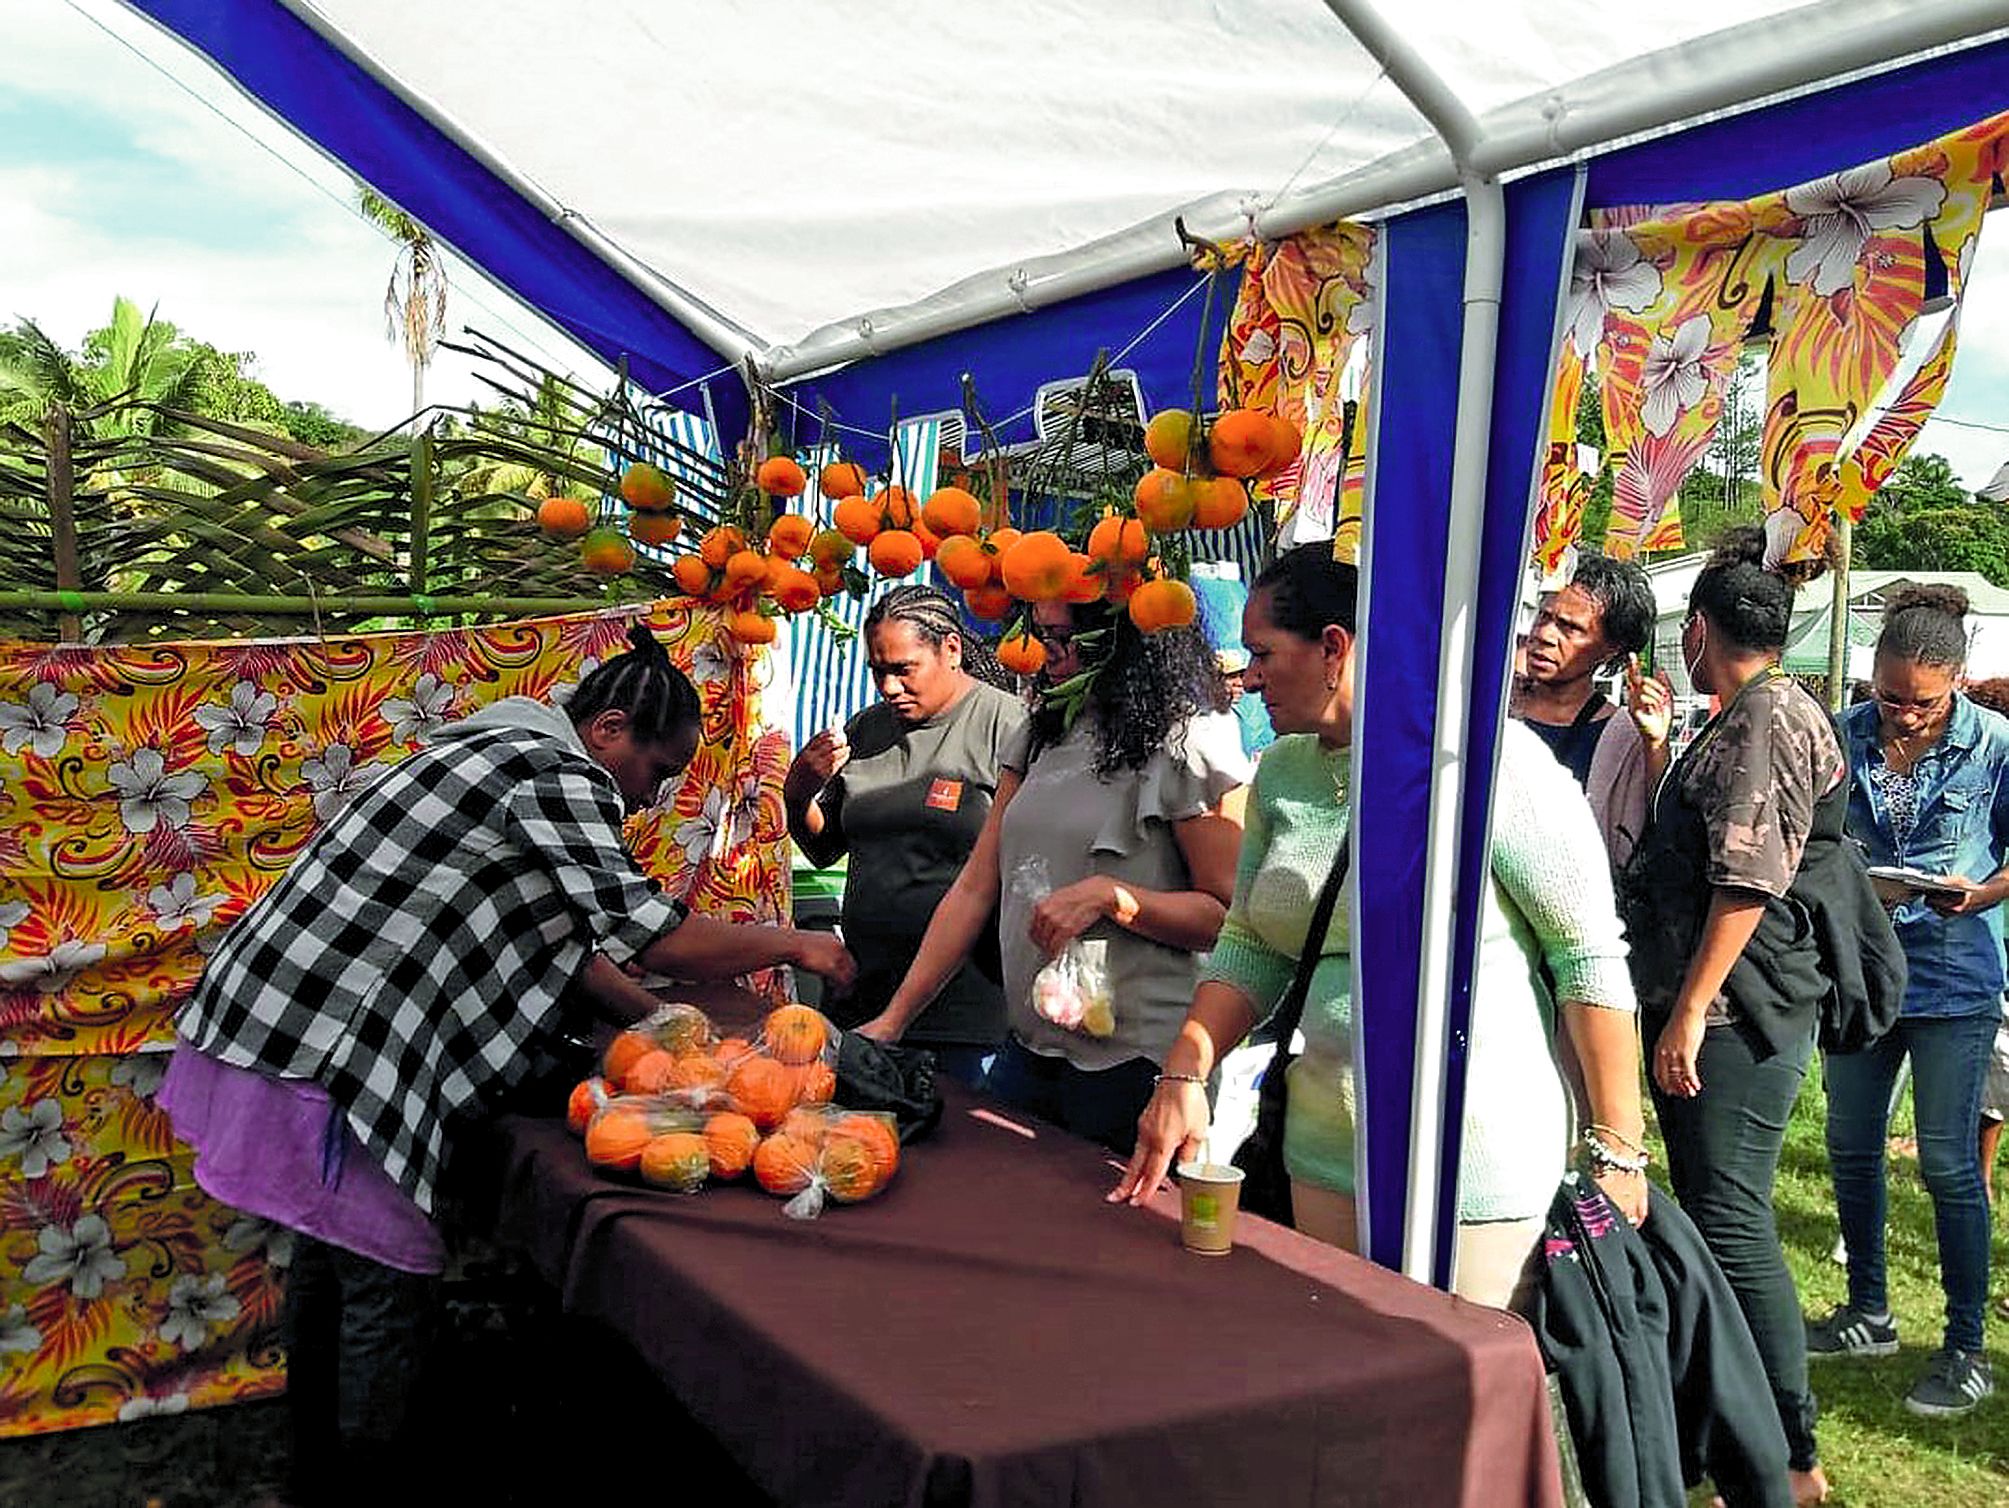 Le public est venu en nombre à la Fête de la mandarine et des fruits. Les visiteurs n’ont pas hésité à faire la queue pour acheter les mandarines d’Emma qui ont vite disparu des étals. Entre six et huit tonnes ont été vendues sur le site. A 700 F le kilo,